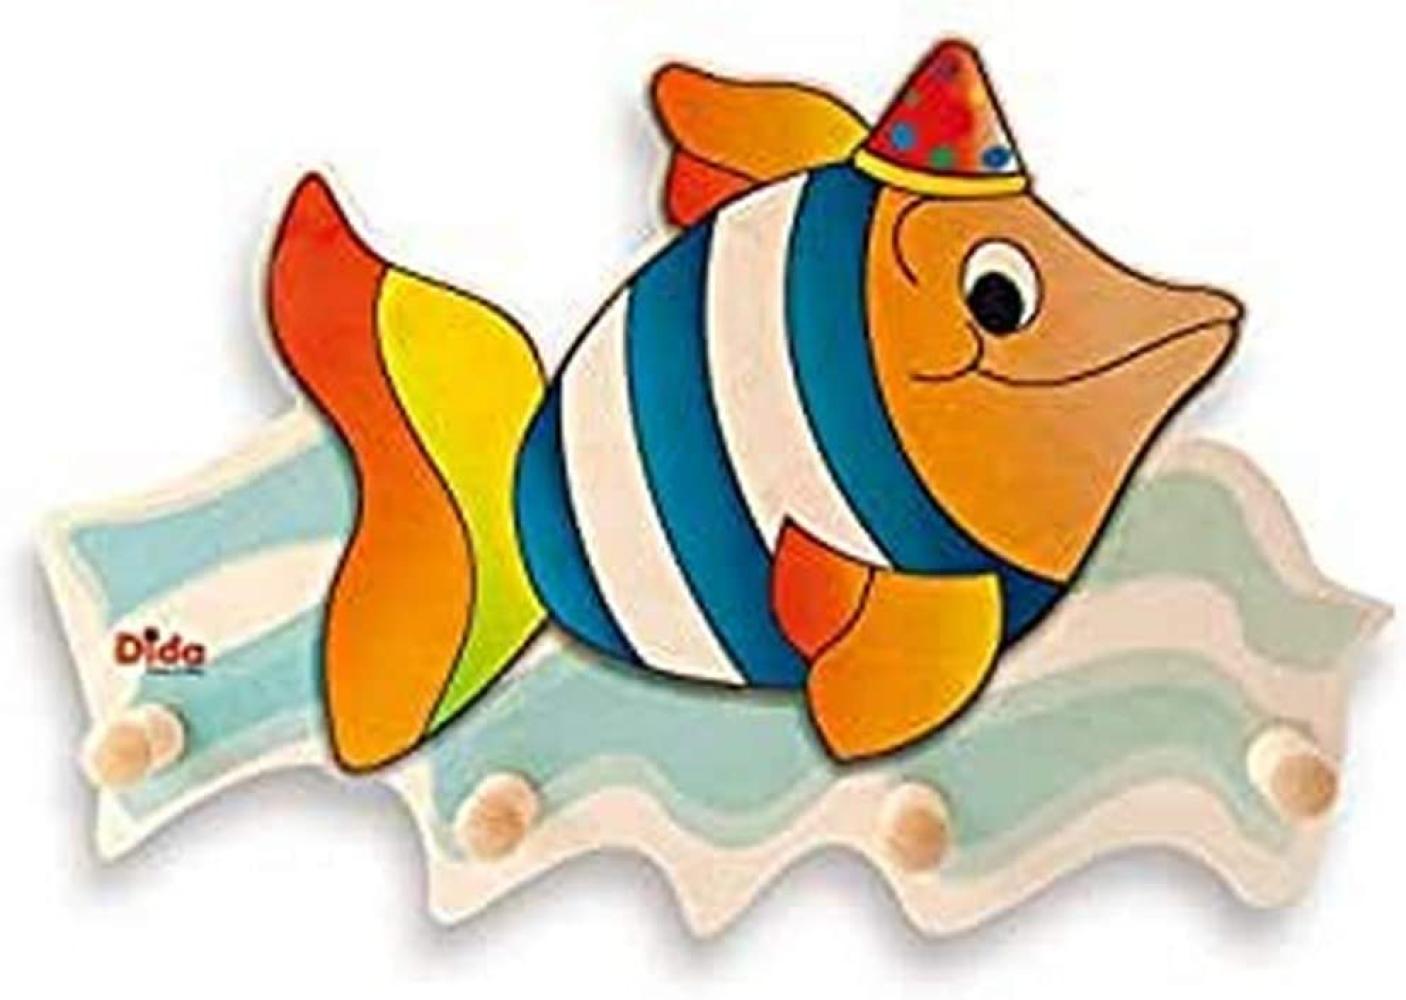 Dida - Wandgarderobe Für Kinder Aus Holz, Dekoriert Mit Einem Fisch Für Das Kinderschlafzimmer Bild 1